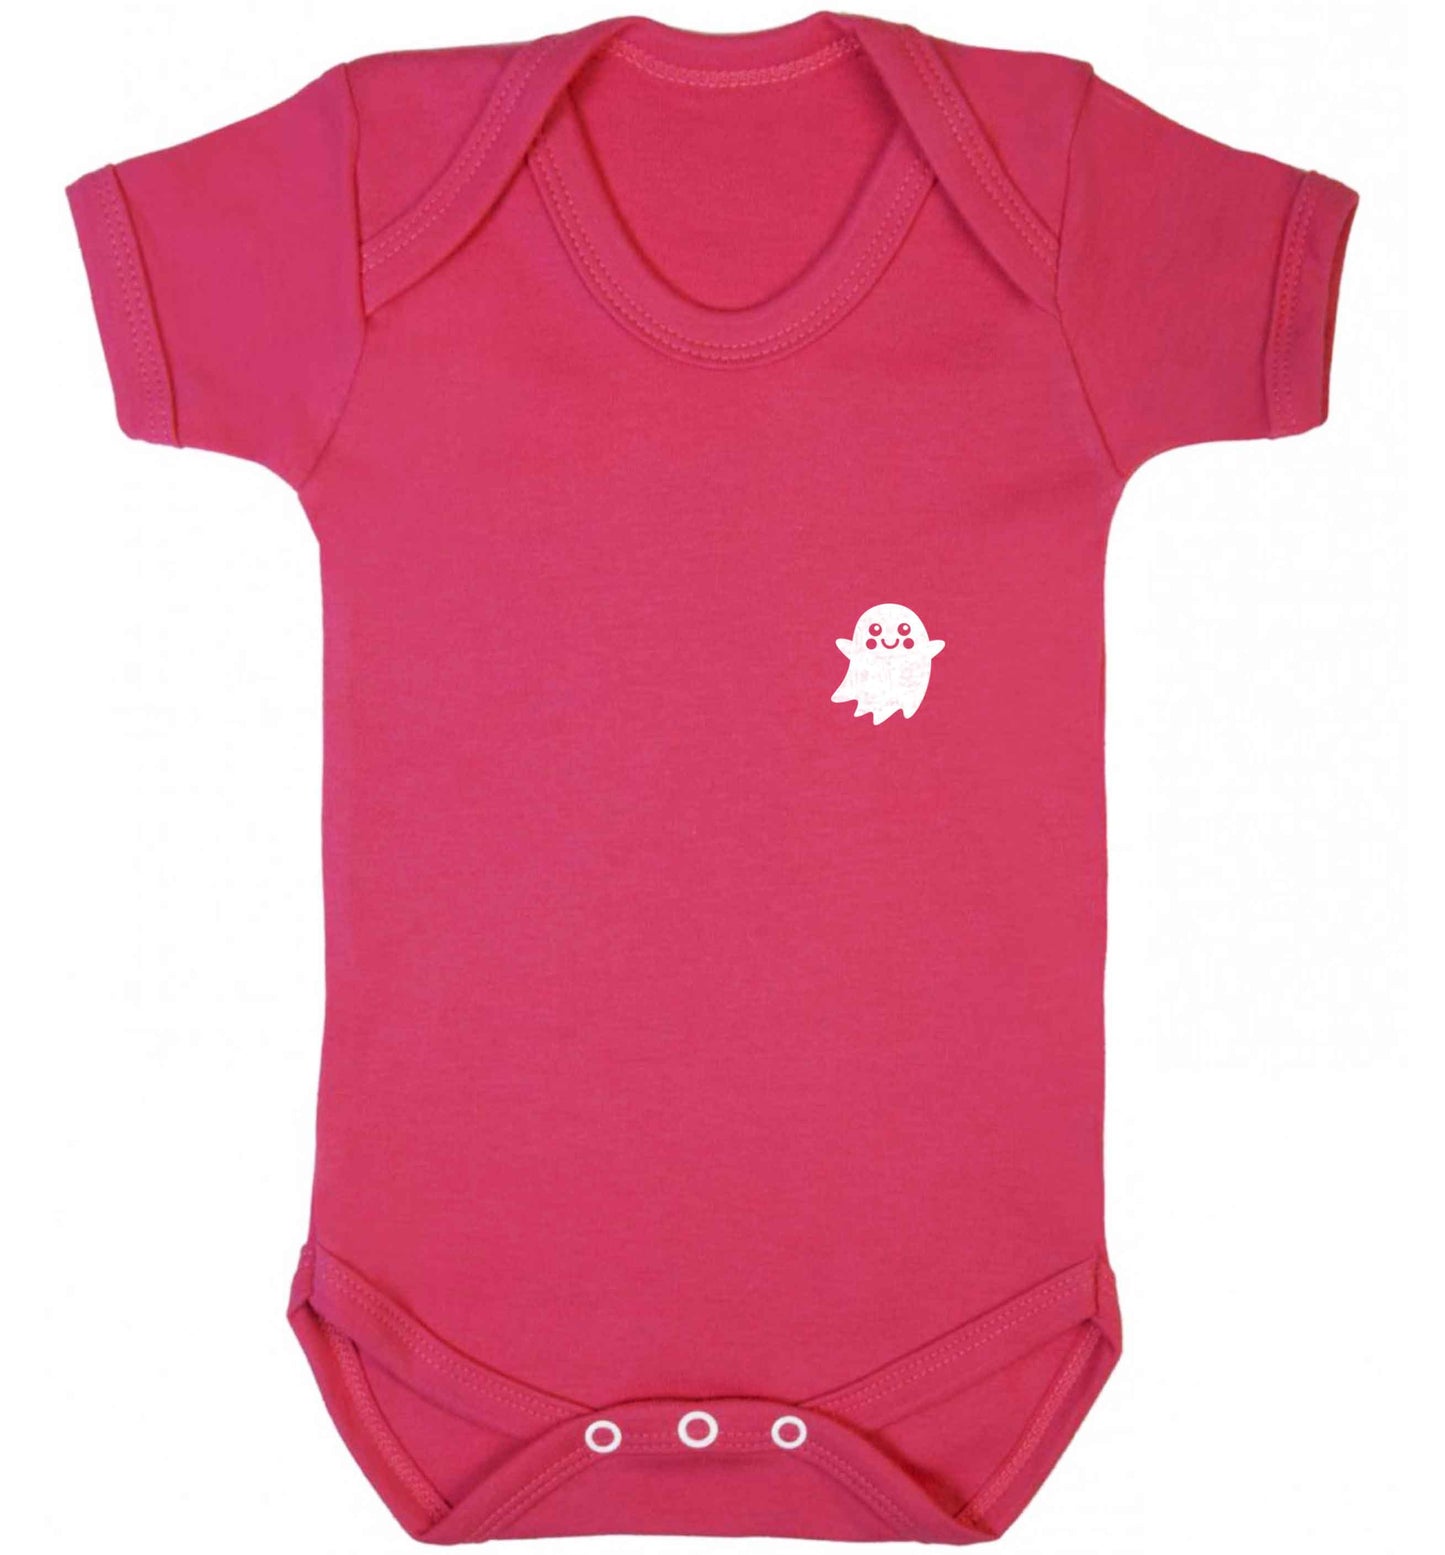 Pocket ghost baby vest dark pink 18-24 months